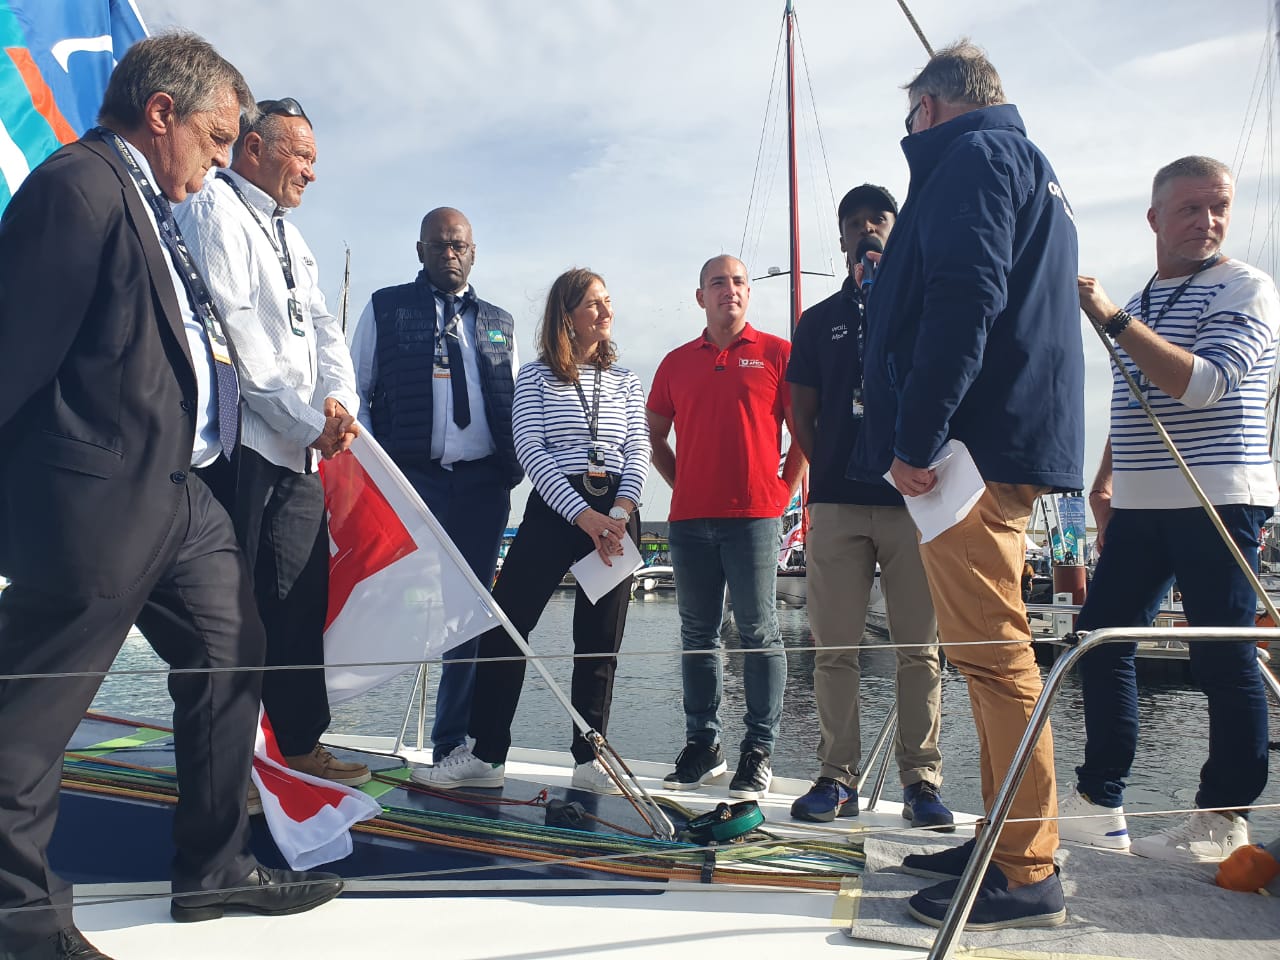     Route du Rhum : le bateau de Kenny Piperol baptisé à Saint-Malo

